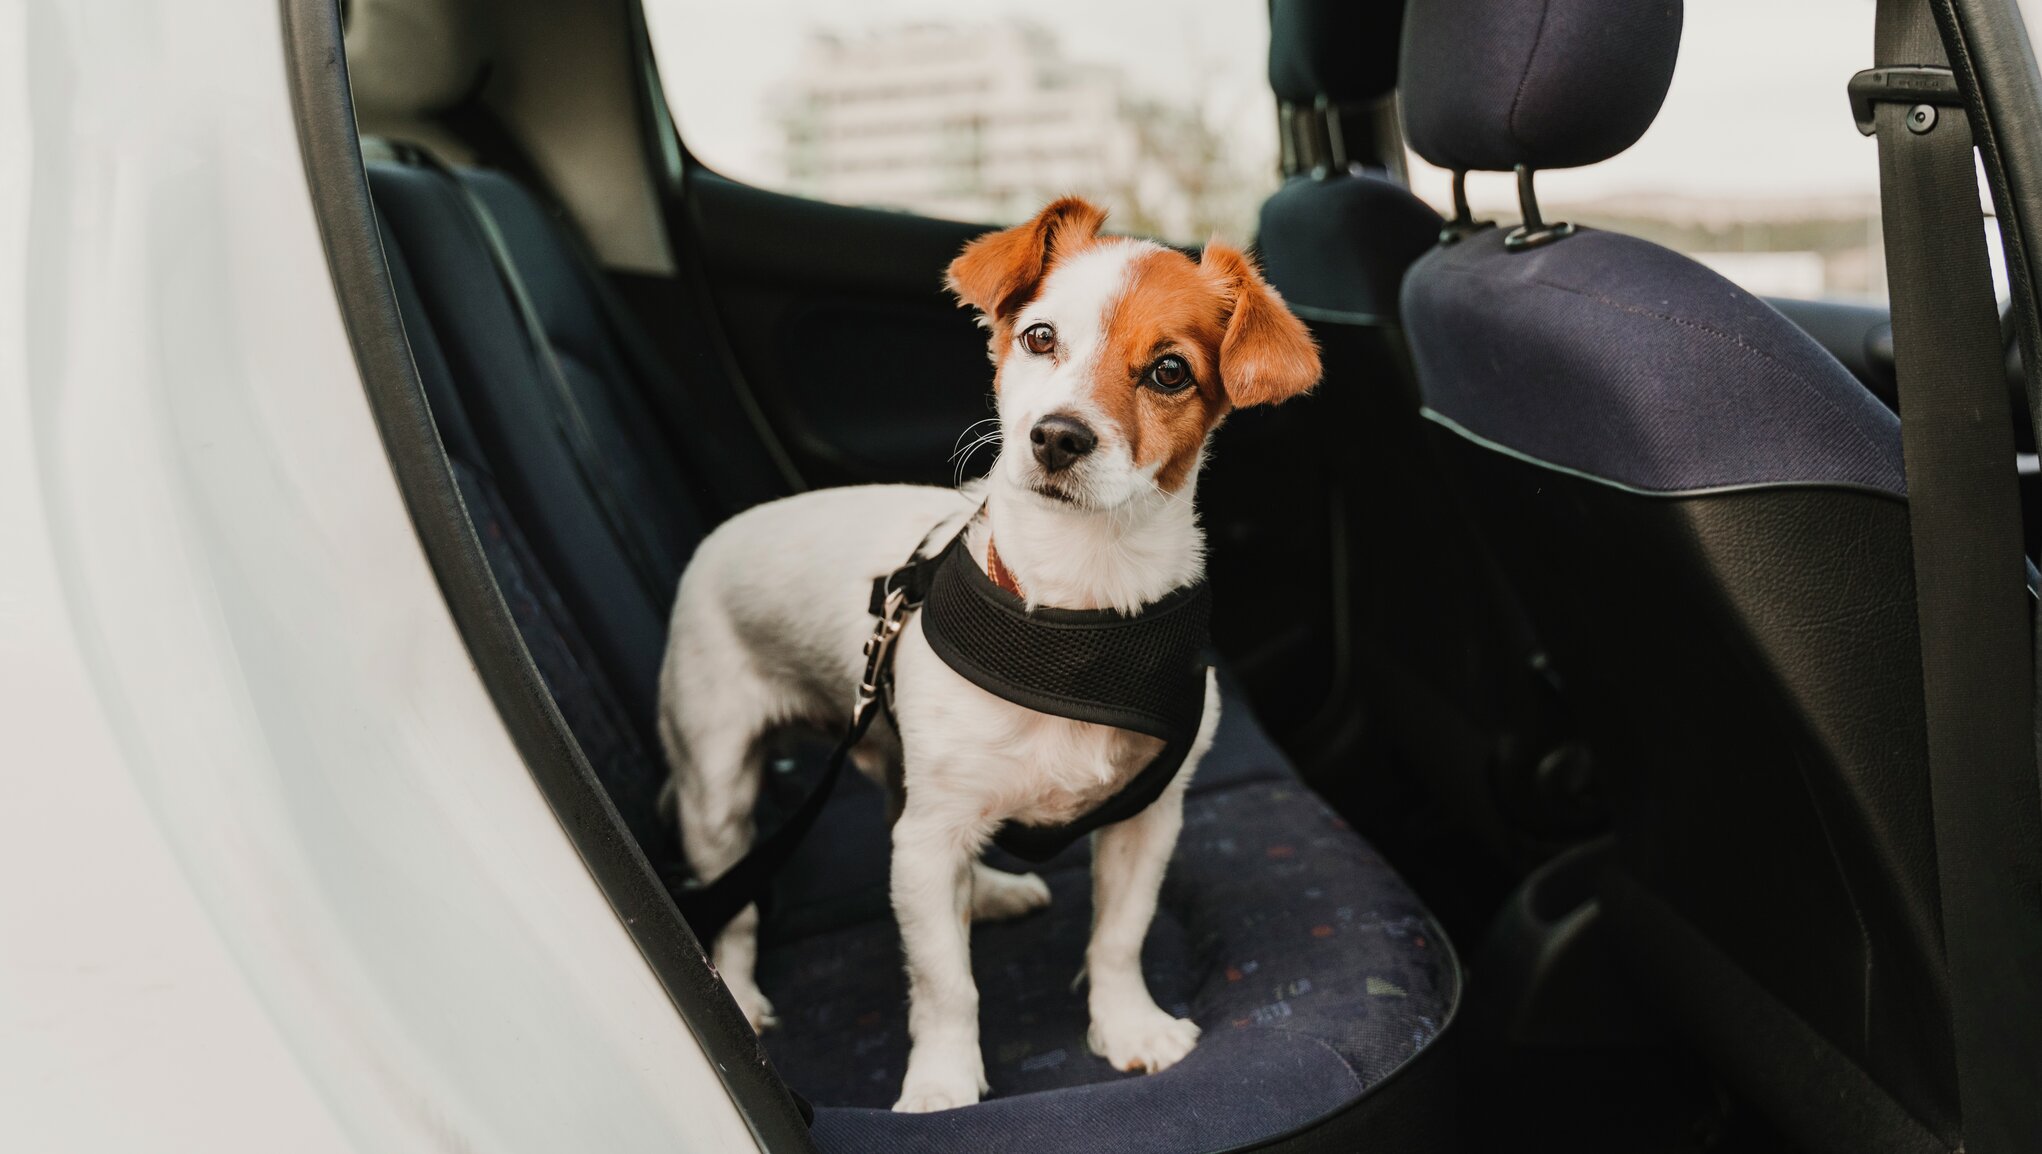 Mažas šuo ant galinės automobilio sėdynės. Kasko draudimas apsaugo ir vežamą augintinį.